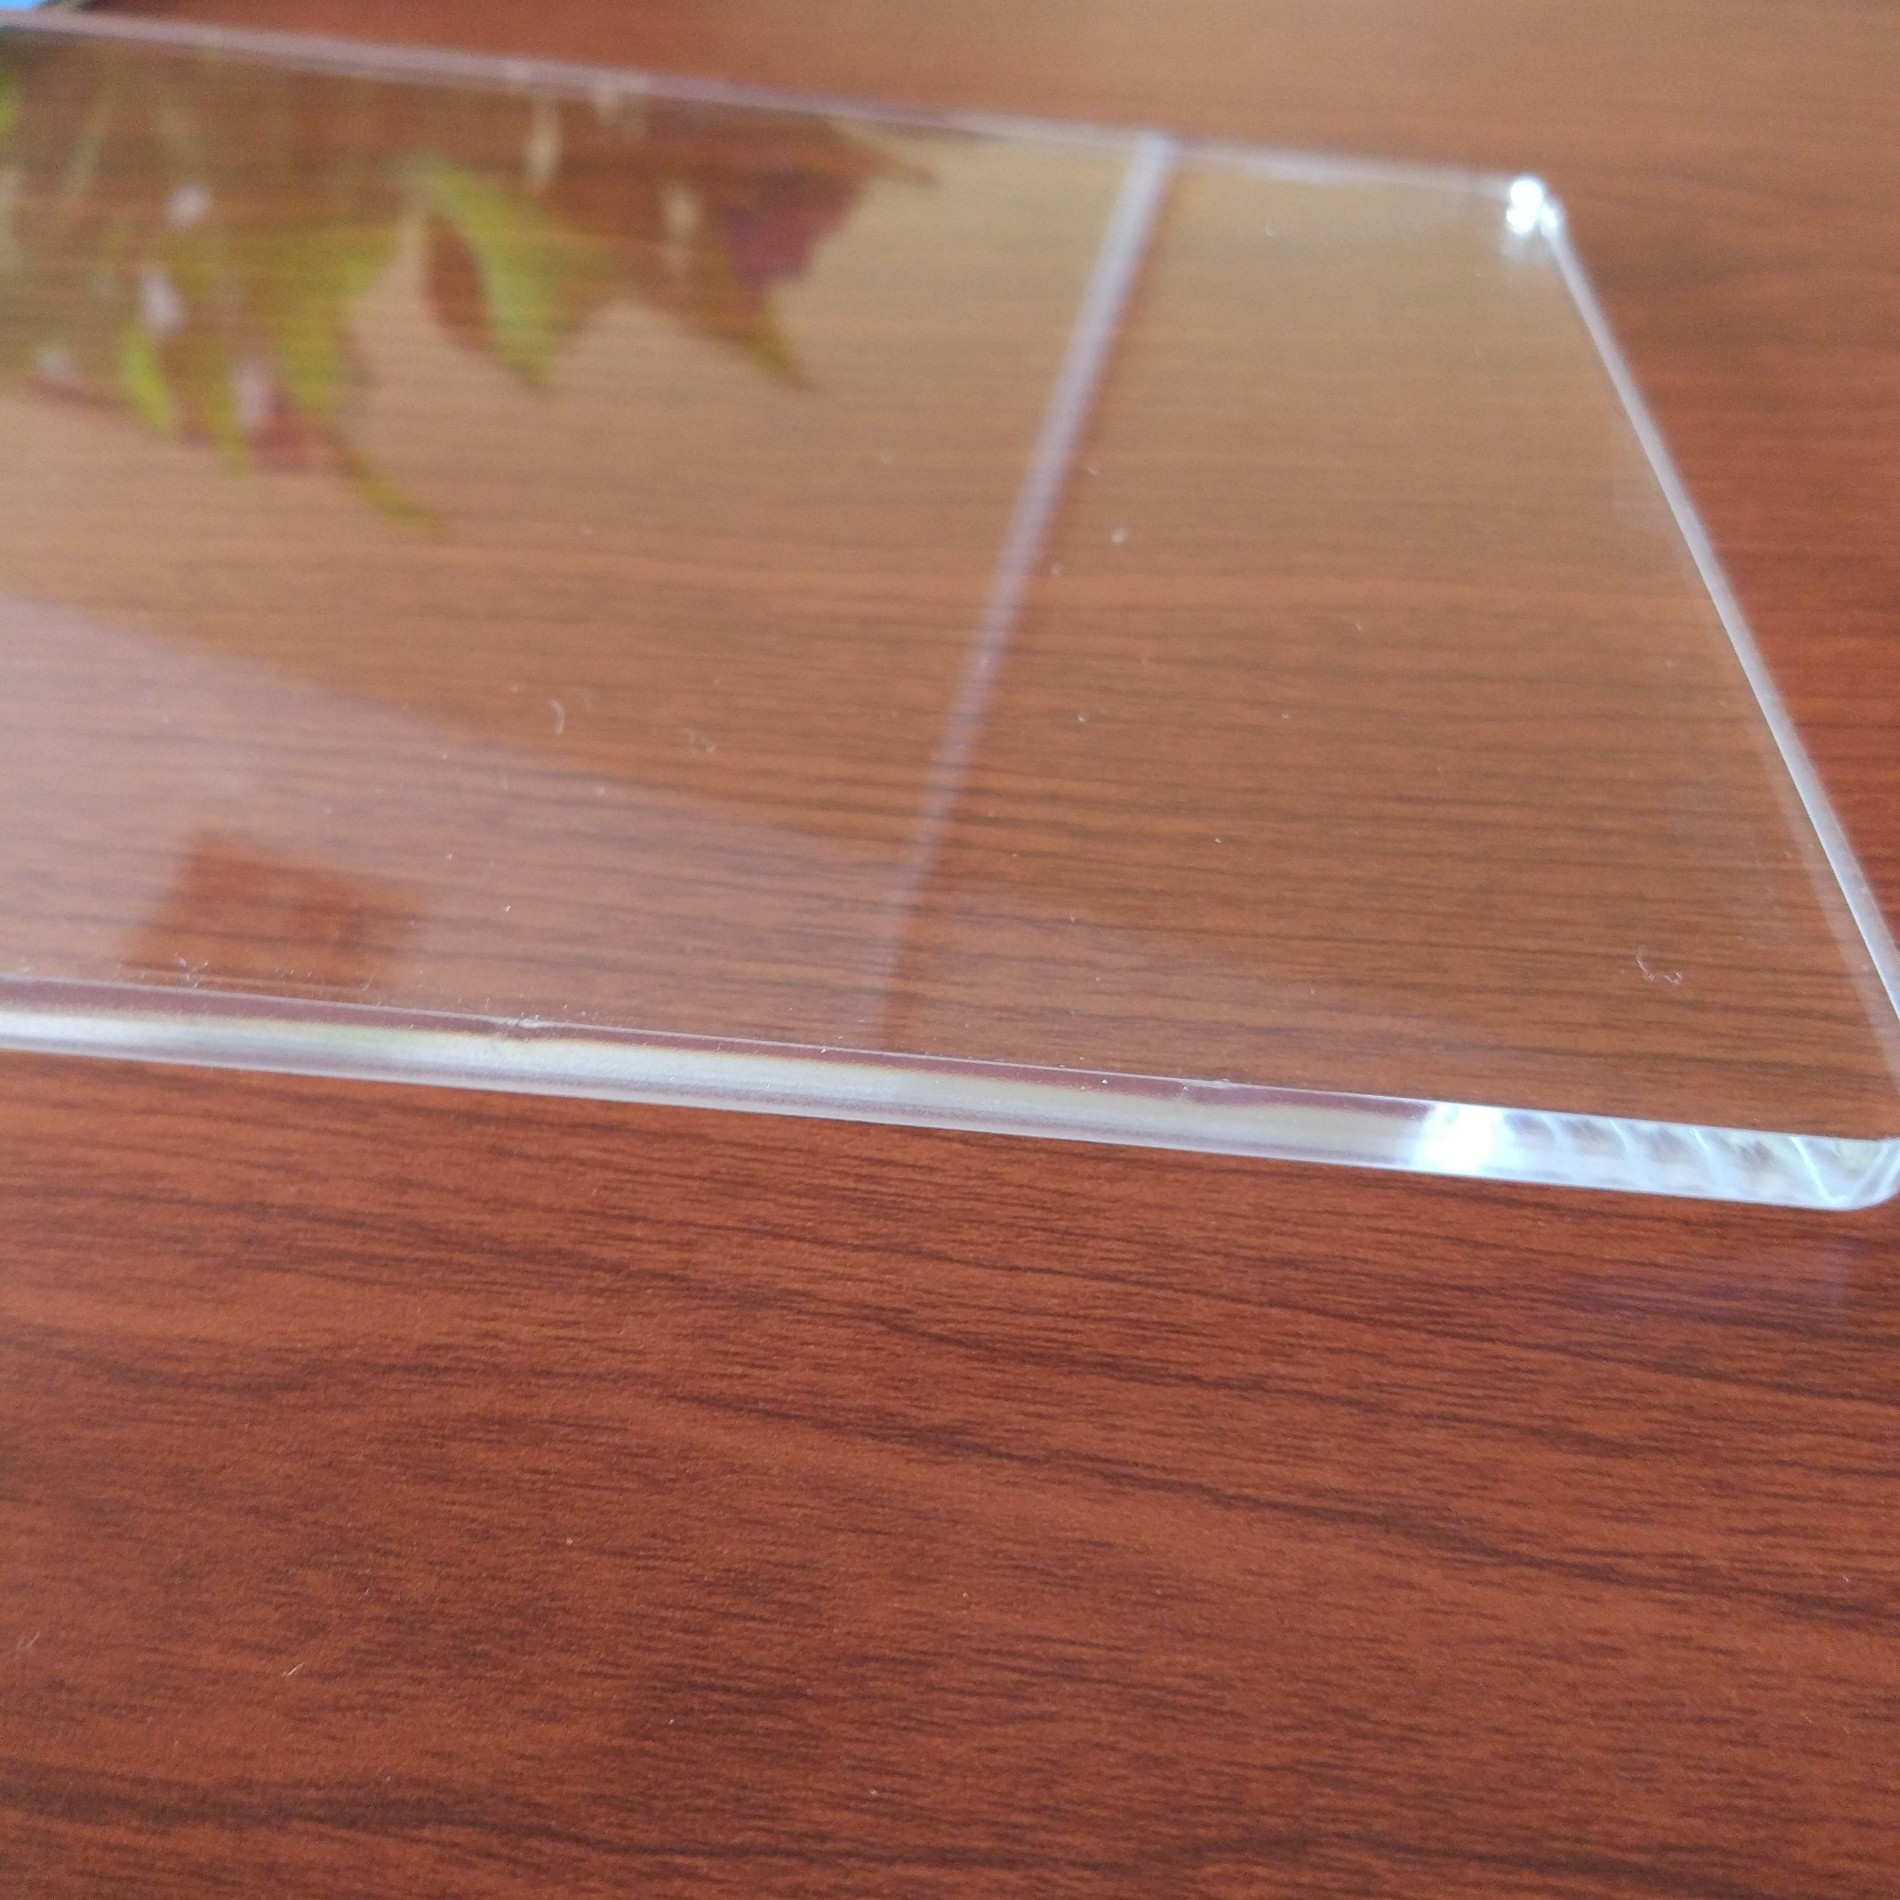 Mua bảng acrylic kính acrylic tấm nhựa plexi kính,bảng acrylic kính acrylic tấm nhựa plexi kính Giá ,bảng acrylic kính acrylic tấm nhựa plexi kính Brands,bảng acrylic kính acrylic tấm nhựa plexi kính Nhà sản xuất,bảng acrylic kính acrylic tấm nhựa plexi kính Quotes,bảng acrylic kính acrylic tấm nhựa plexi kính Công ty